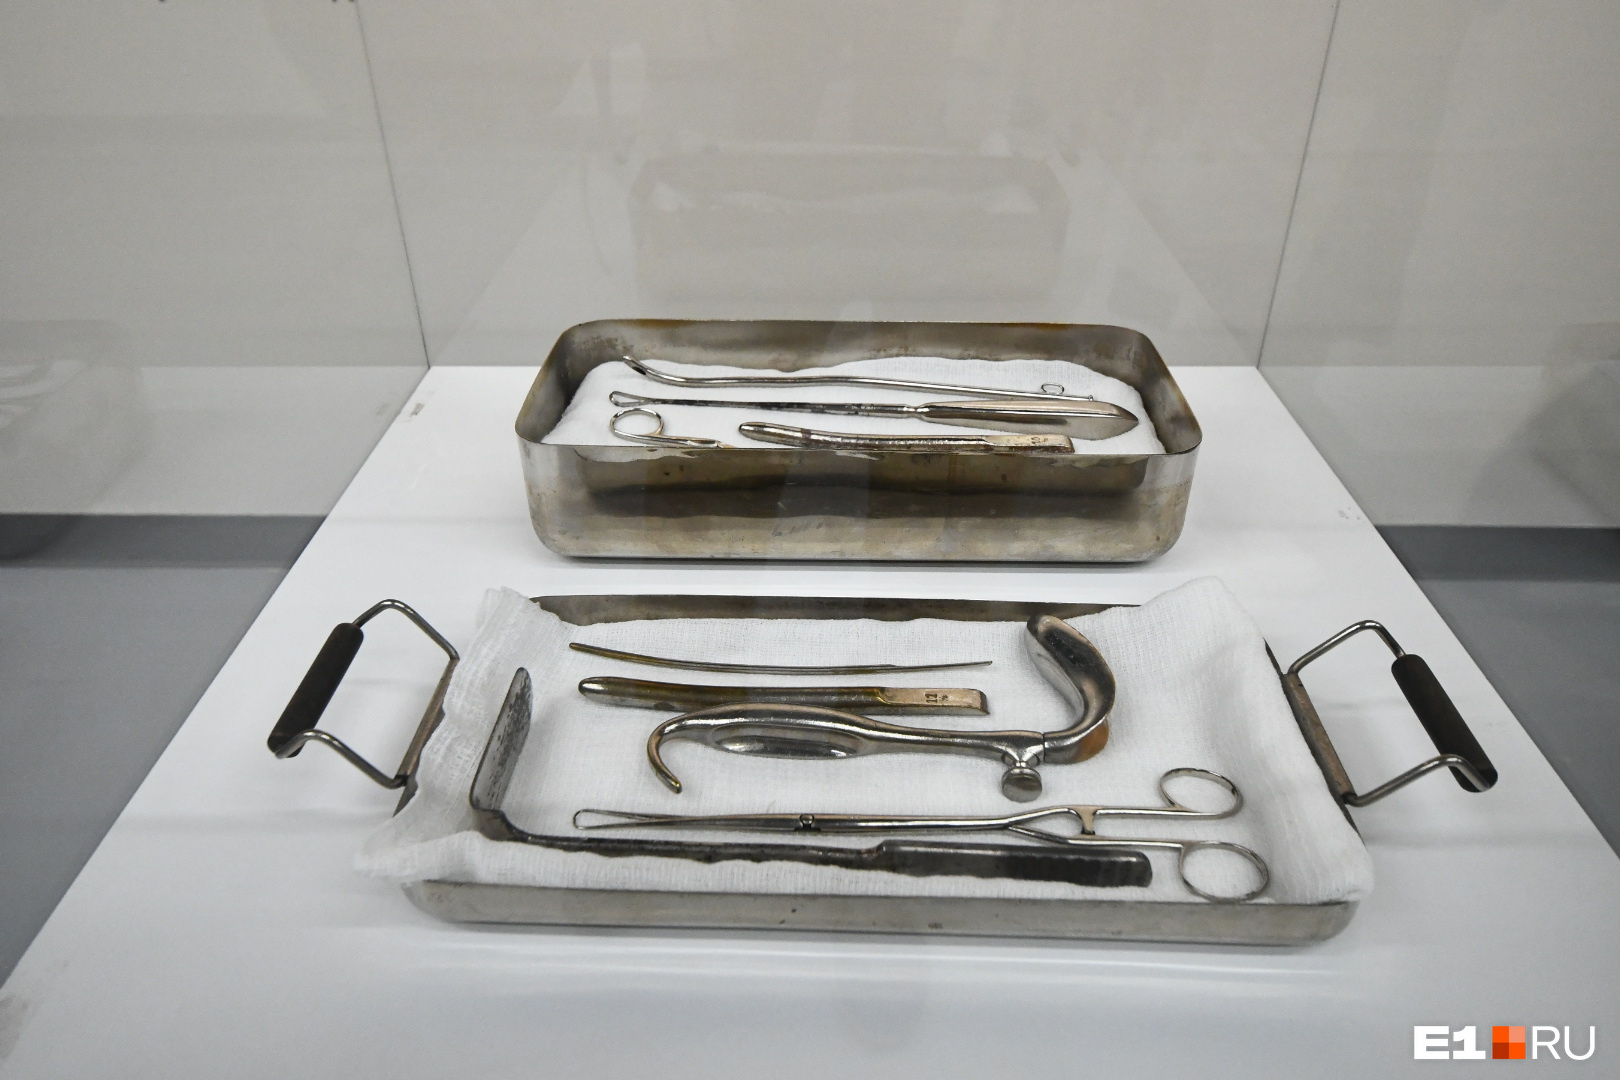 Во время реконструкции рабочие нашли медицинские инструменты, которые здесь использовали